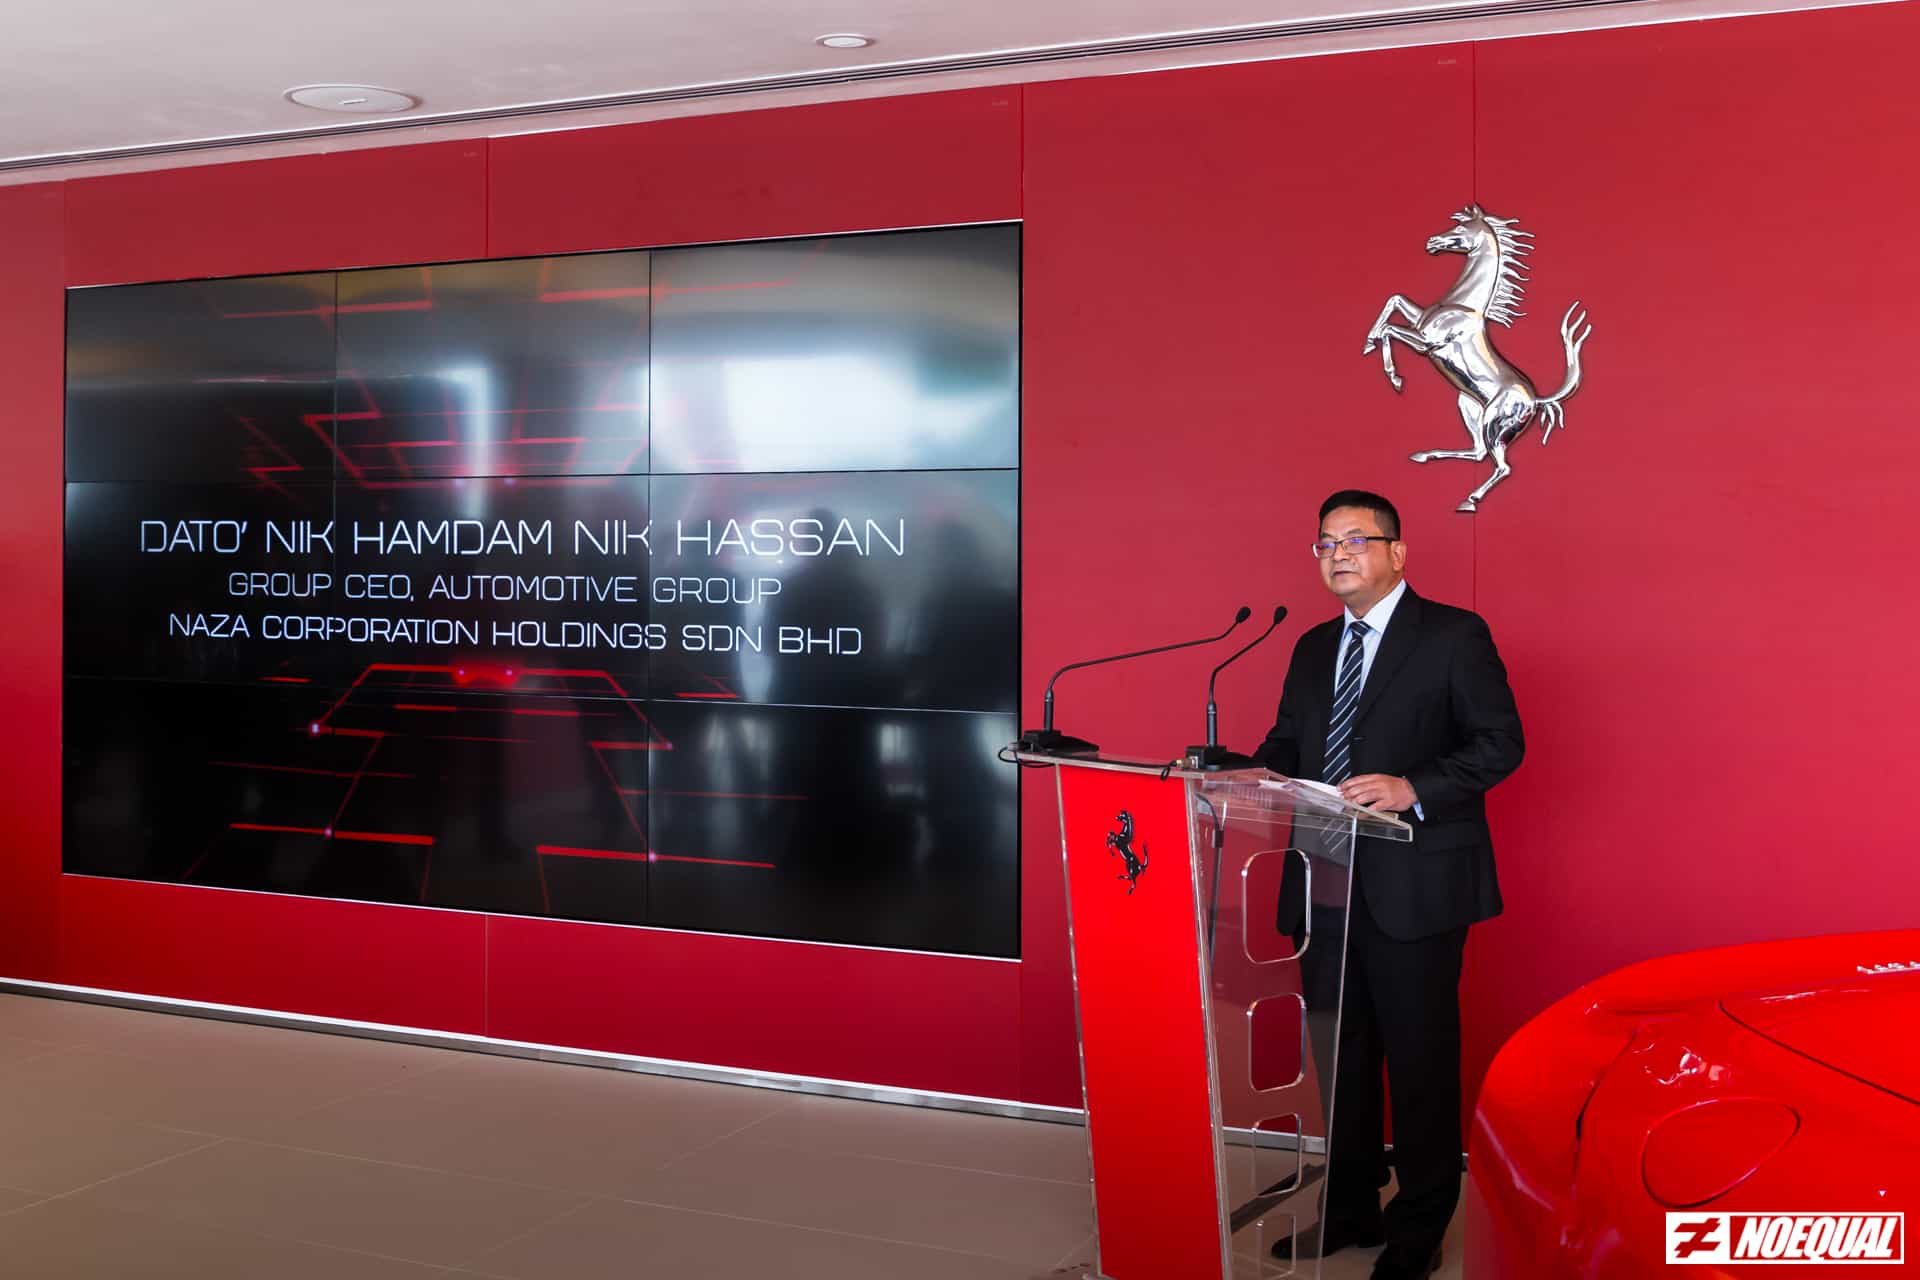 Dato’ Nik Hamdam Nik Hassan during Ferrari SF90 Stradale Launch